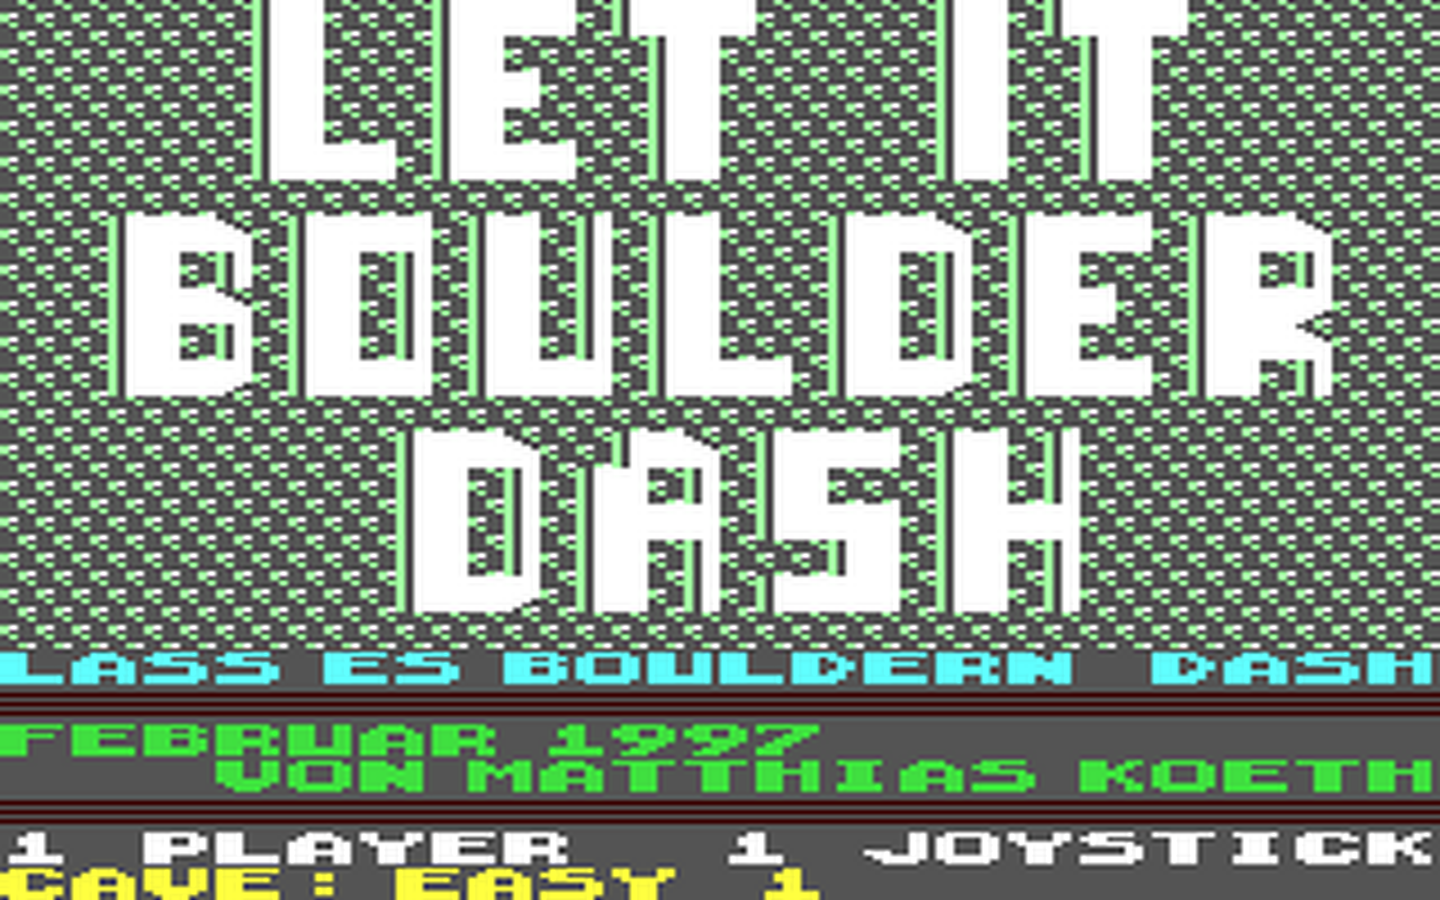 C64 GameBase Let_It_Boulder_Dash (Not_Published) 1997